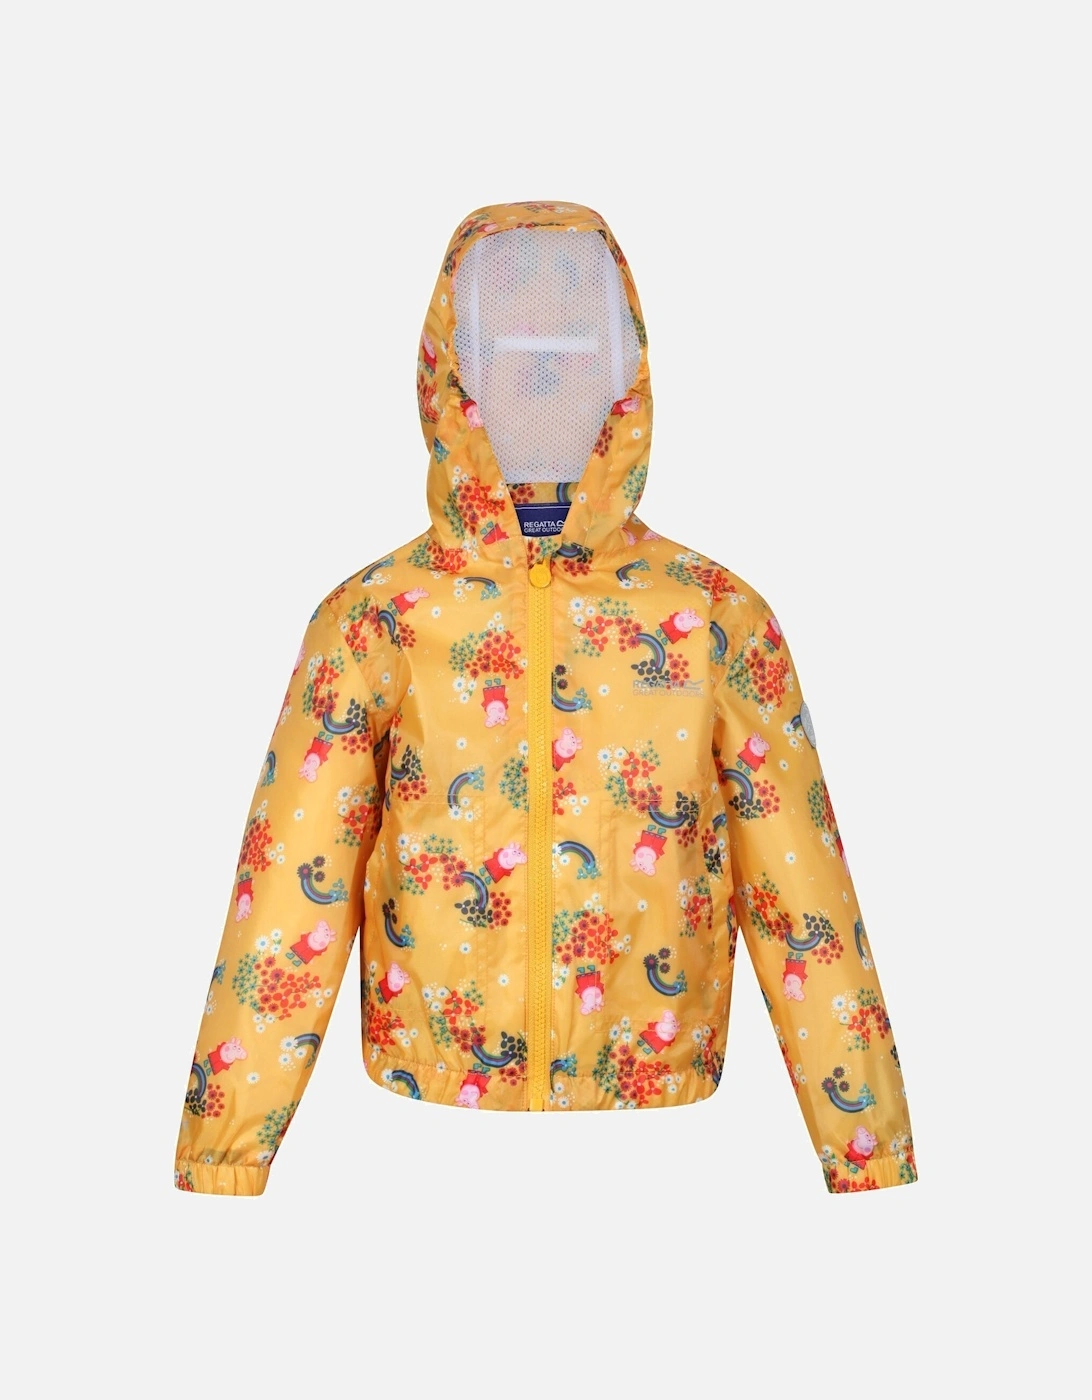 Childrens/Kids Muddy Puddle Peppa Pig Floral Hooded Waterproof Jacket, 6 of 5